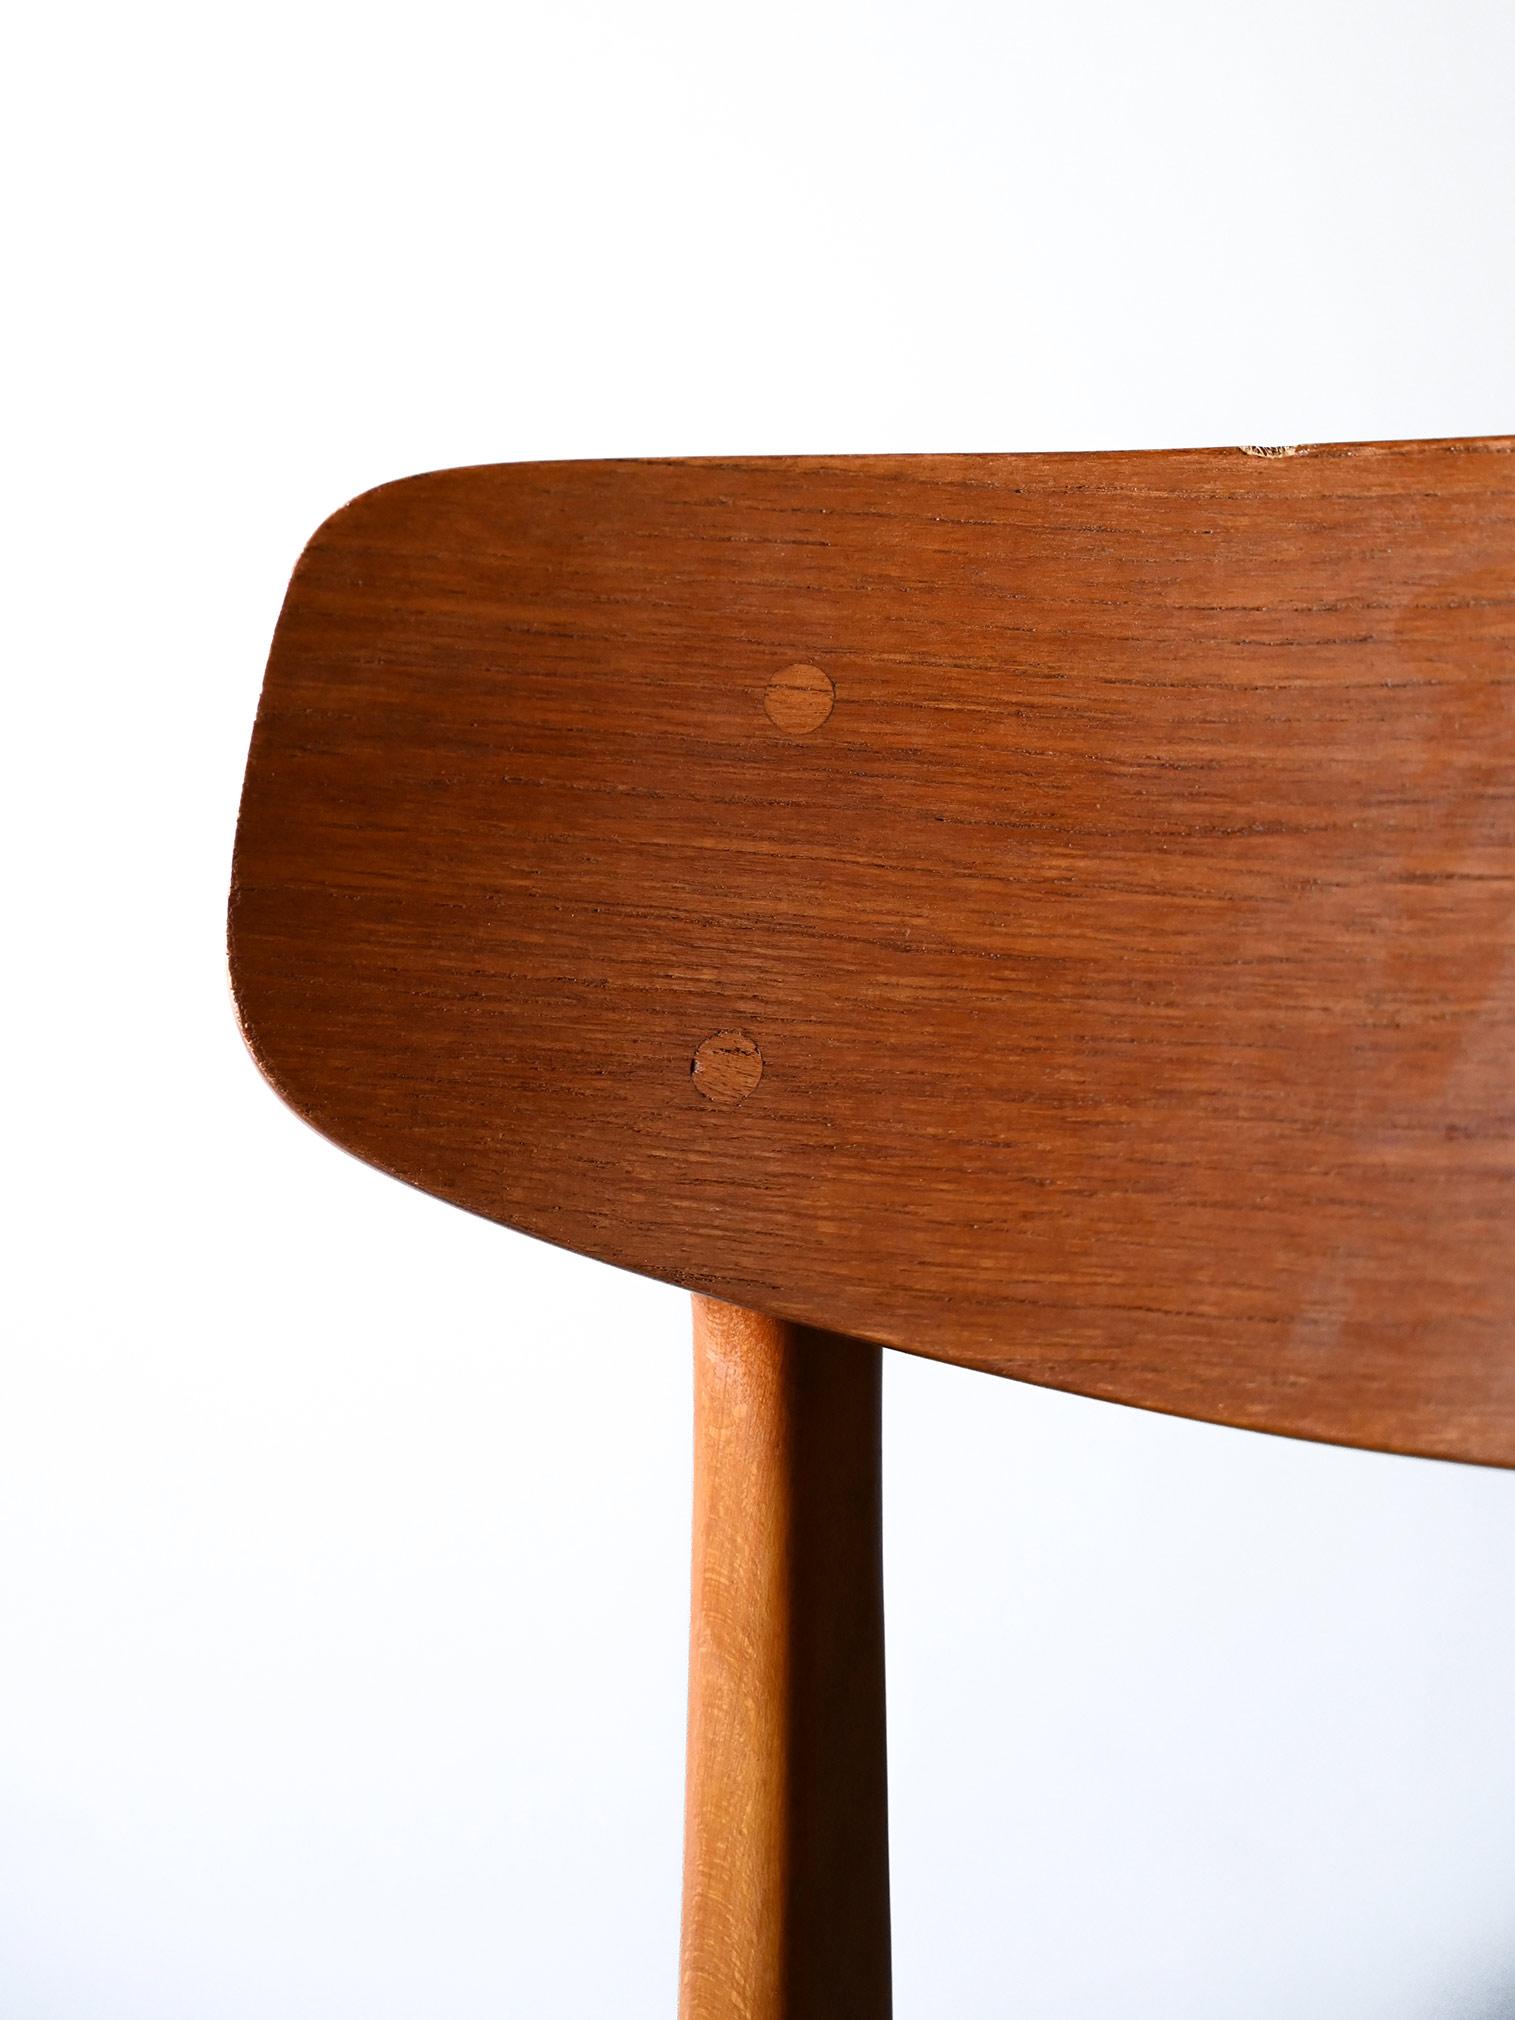 Fabric Danish teak wood chair reupholstered